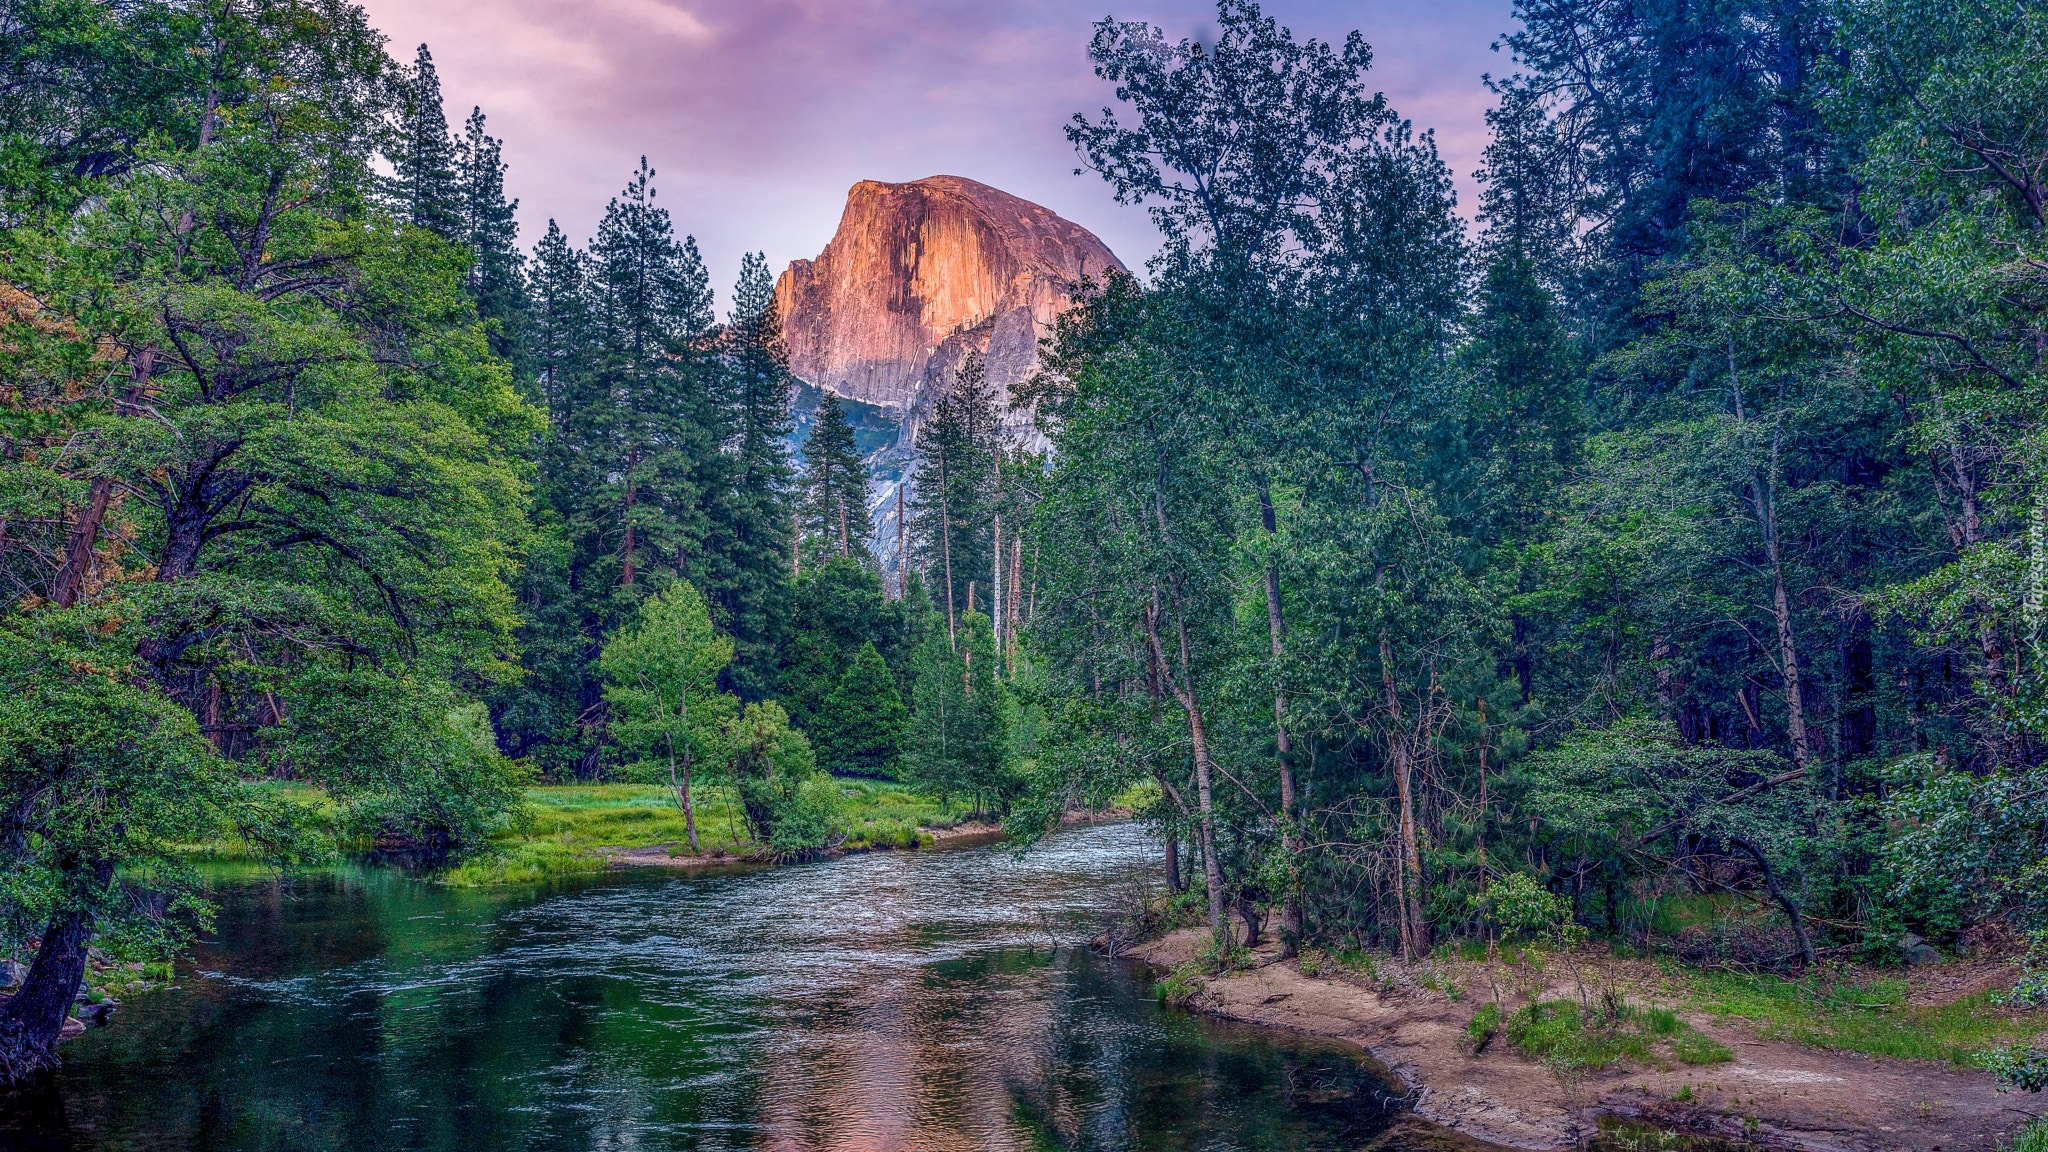 Stany Zjednoczone, Kalifornia, Park Narodowy Yosemite, Skały, Rzeka, Merced River, Góry, Sierra Nevada, Half Dome, Drzewa